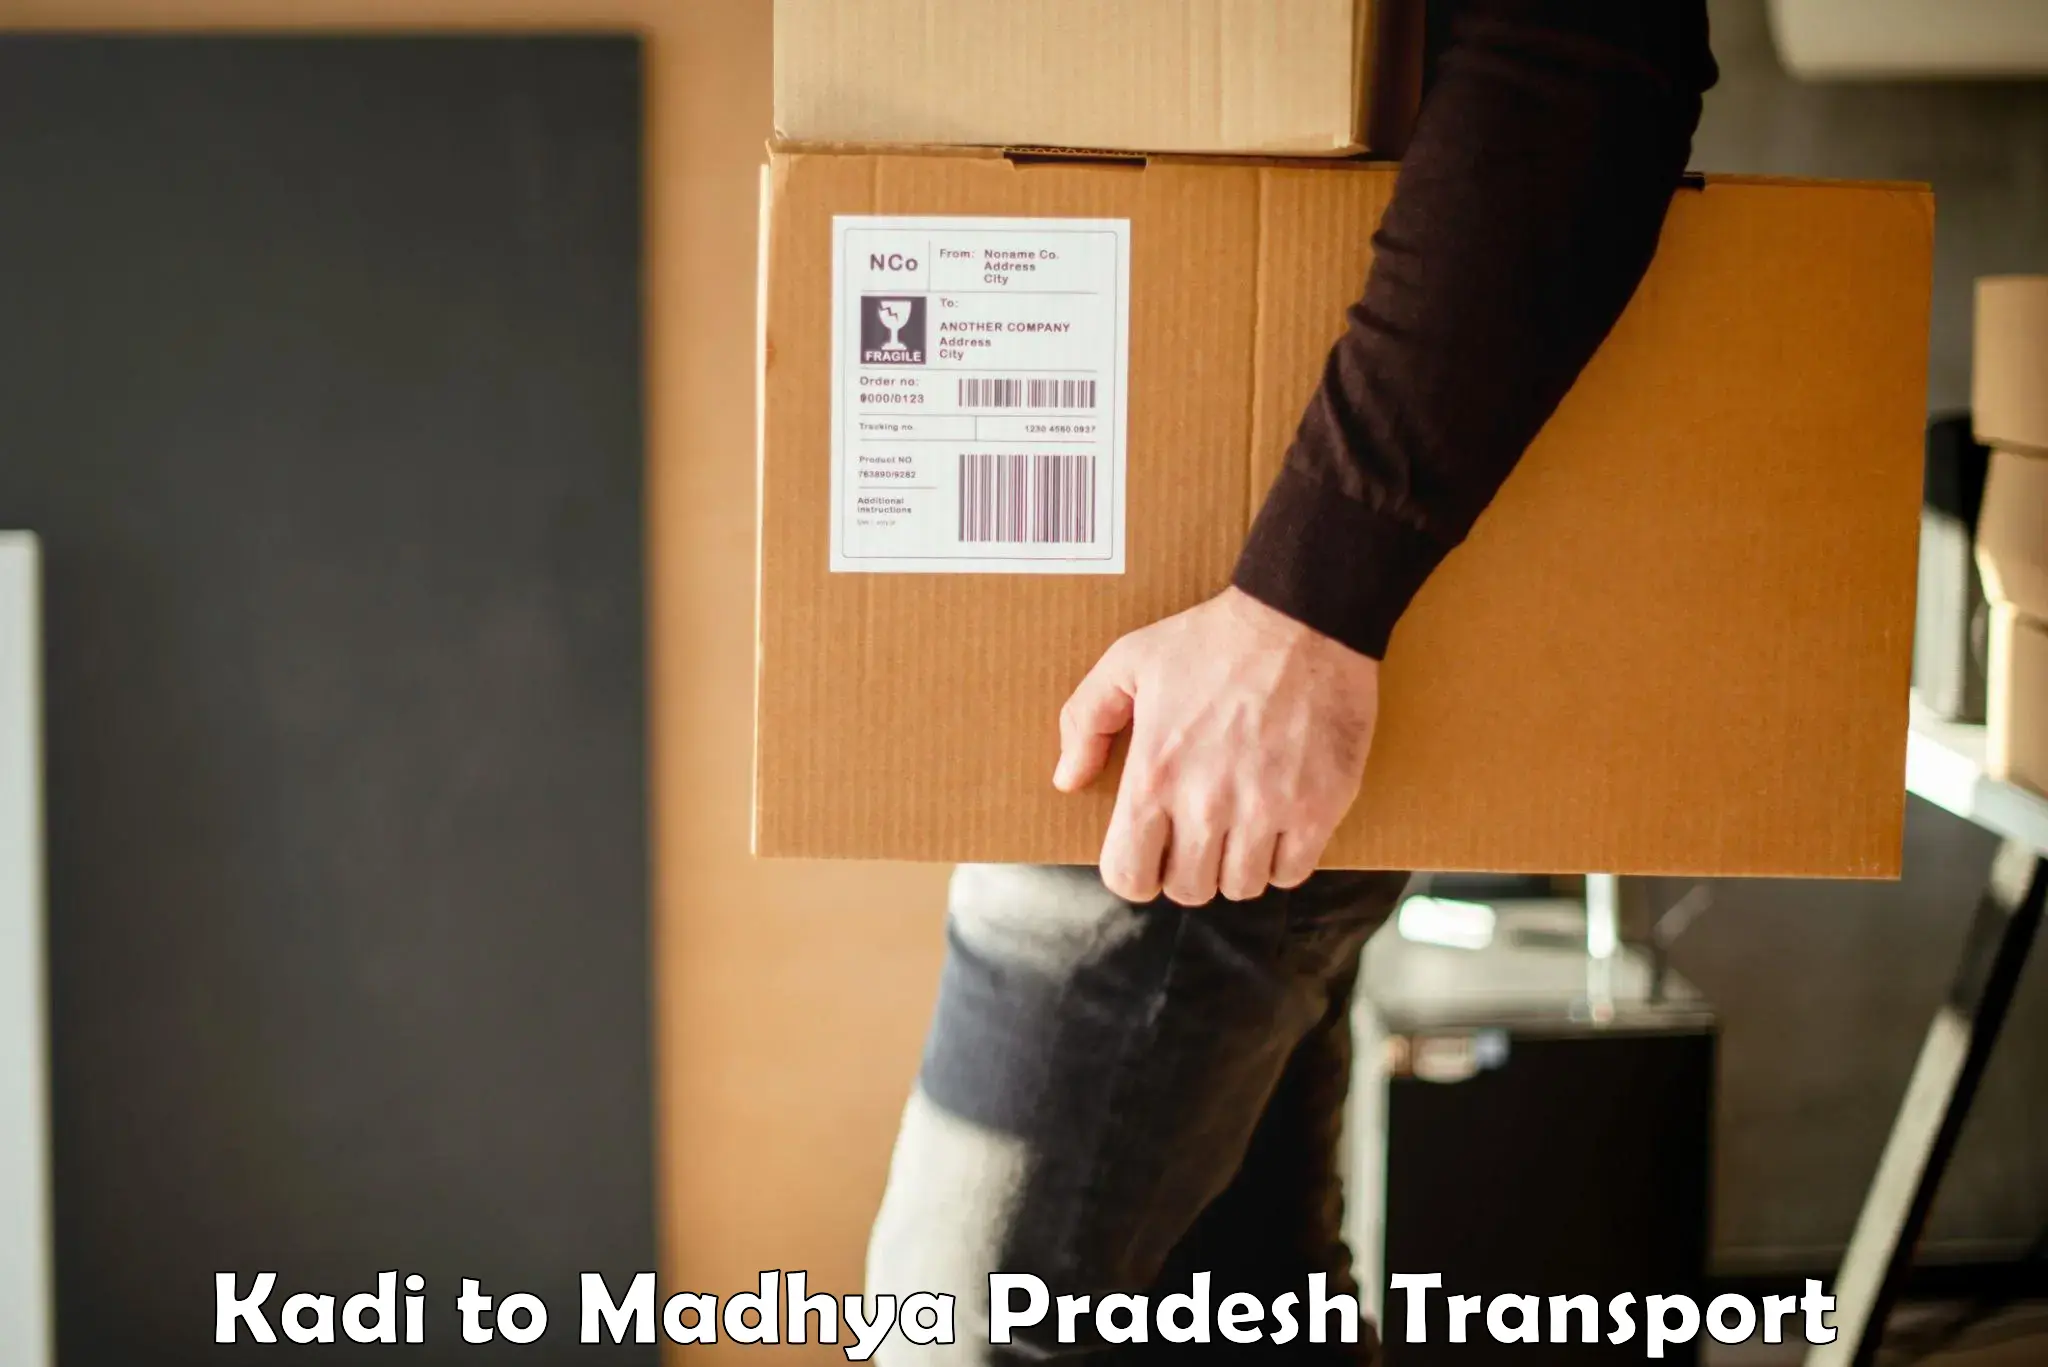 Shipping partner Kadi to Begumganj